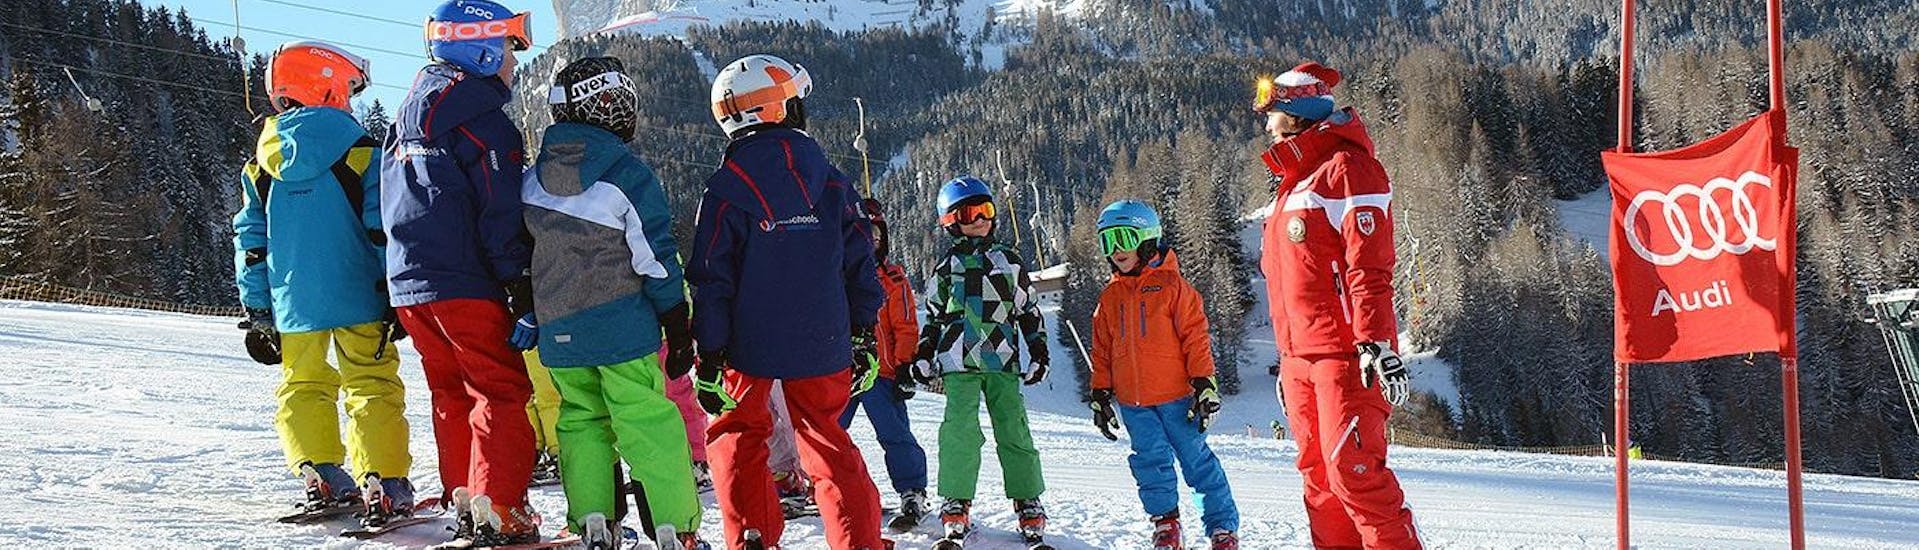 Cours de ski Enfants dès 10 ans - Avancé.